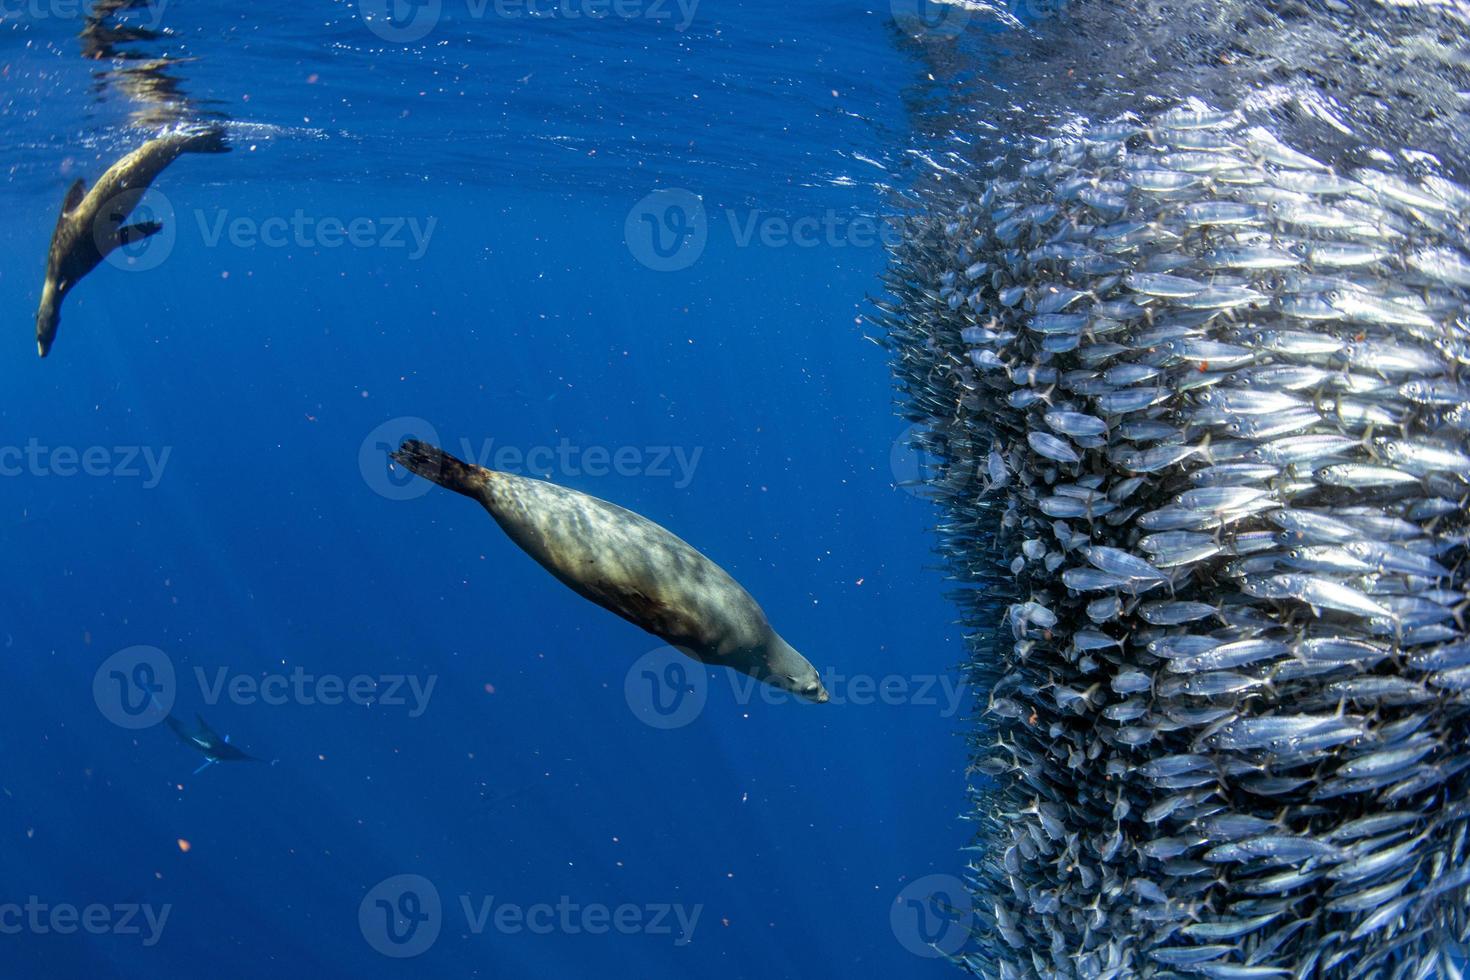 zee leeuw jacht- in sardine aas bal in grote Oceaan oceaan foto